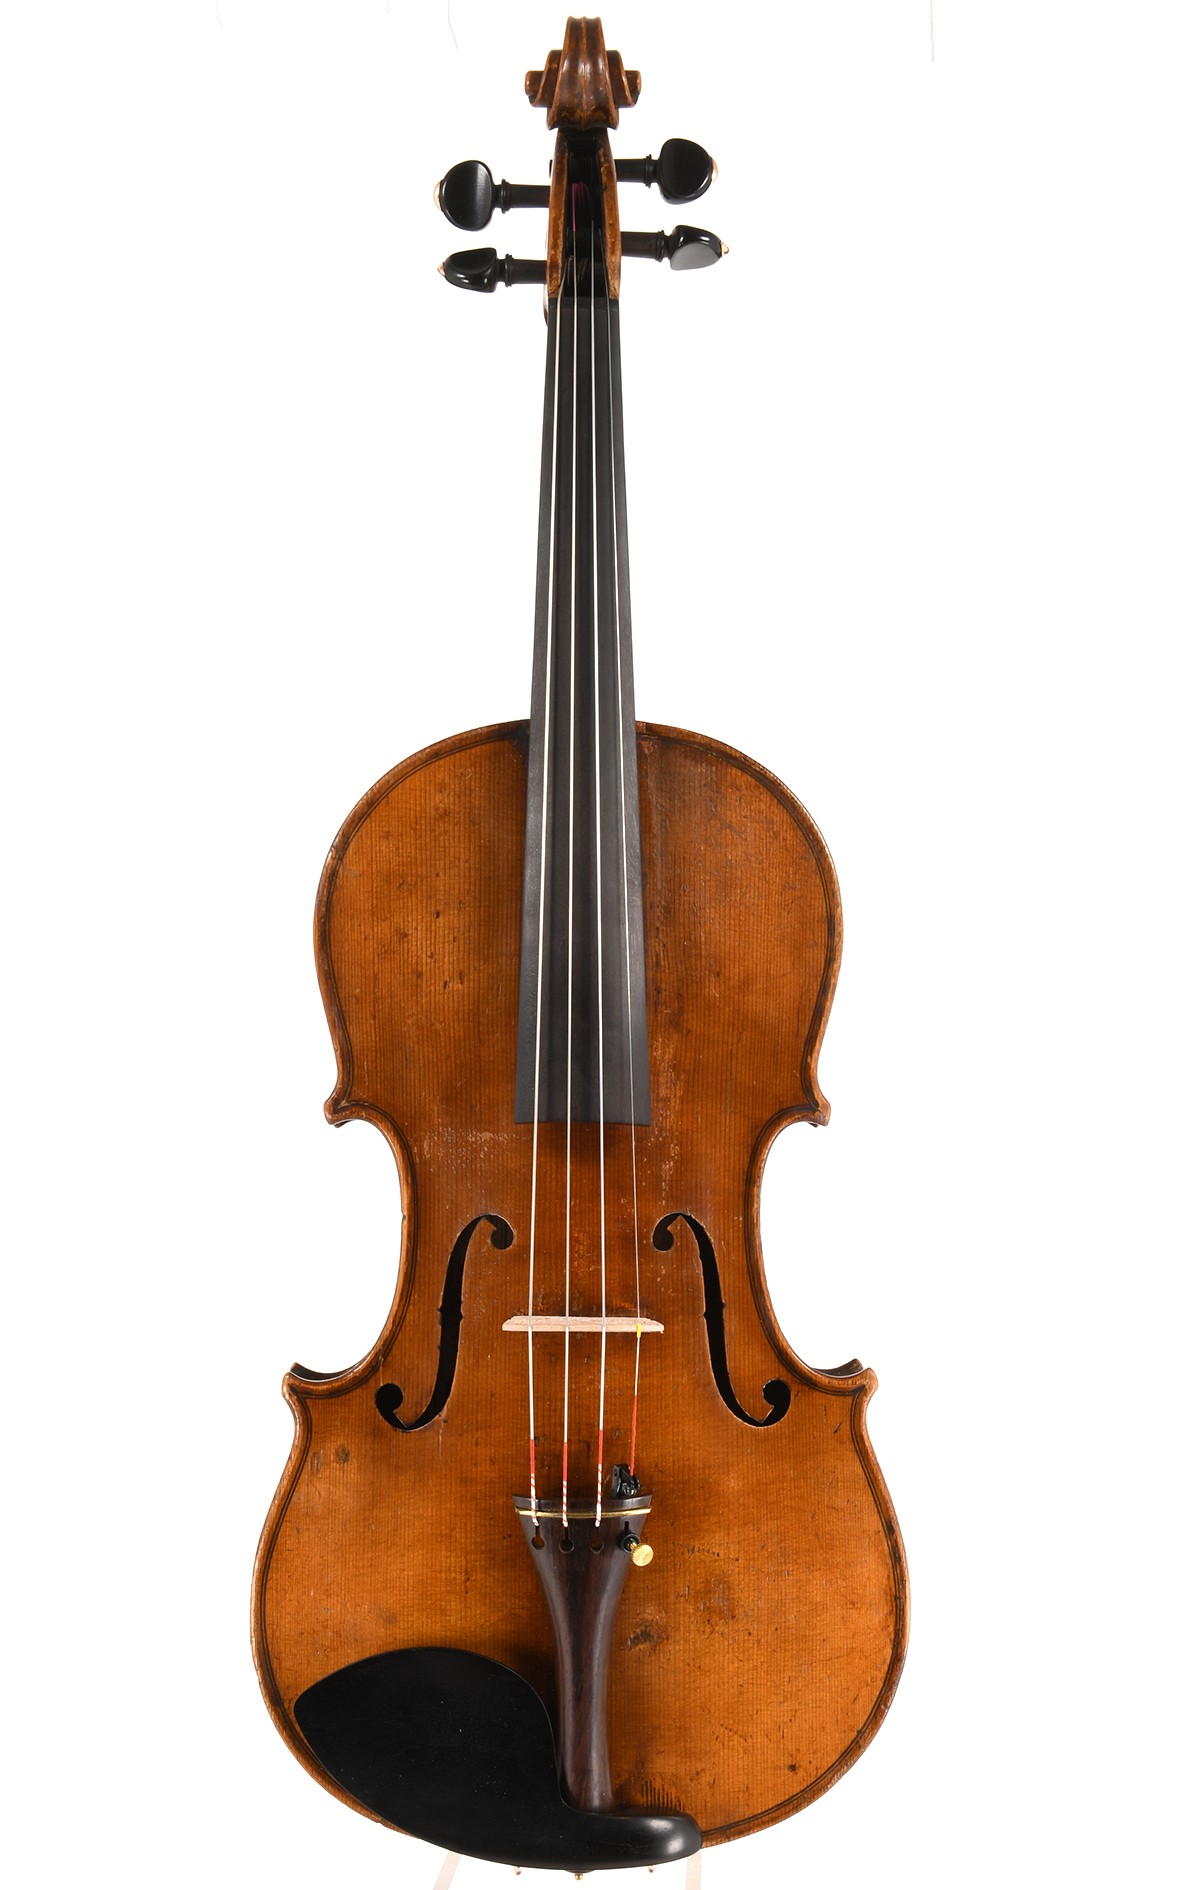 Antique Violin from Markneukirchen. A.E. Fischer, 1897